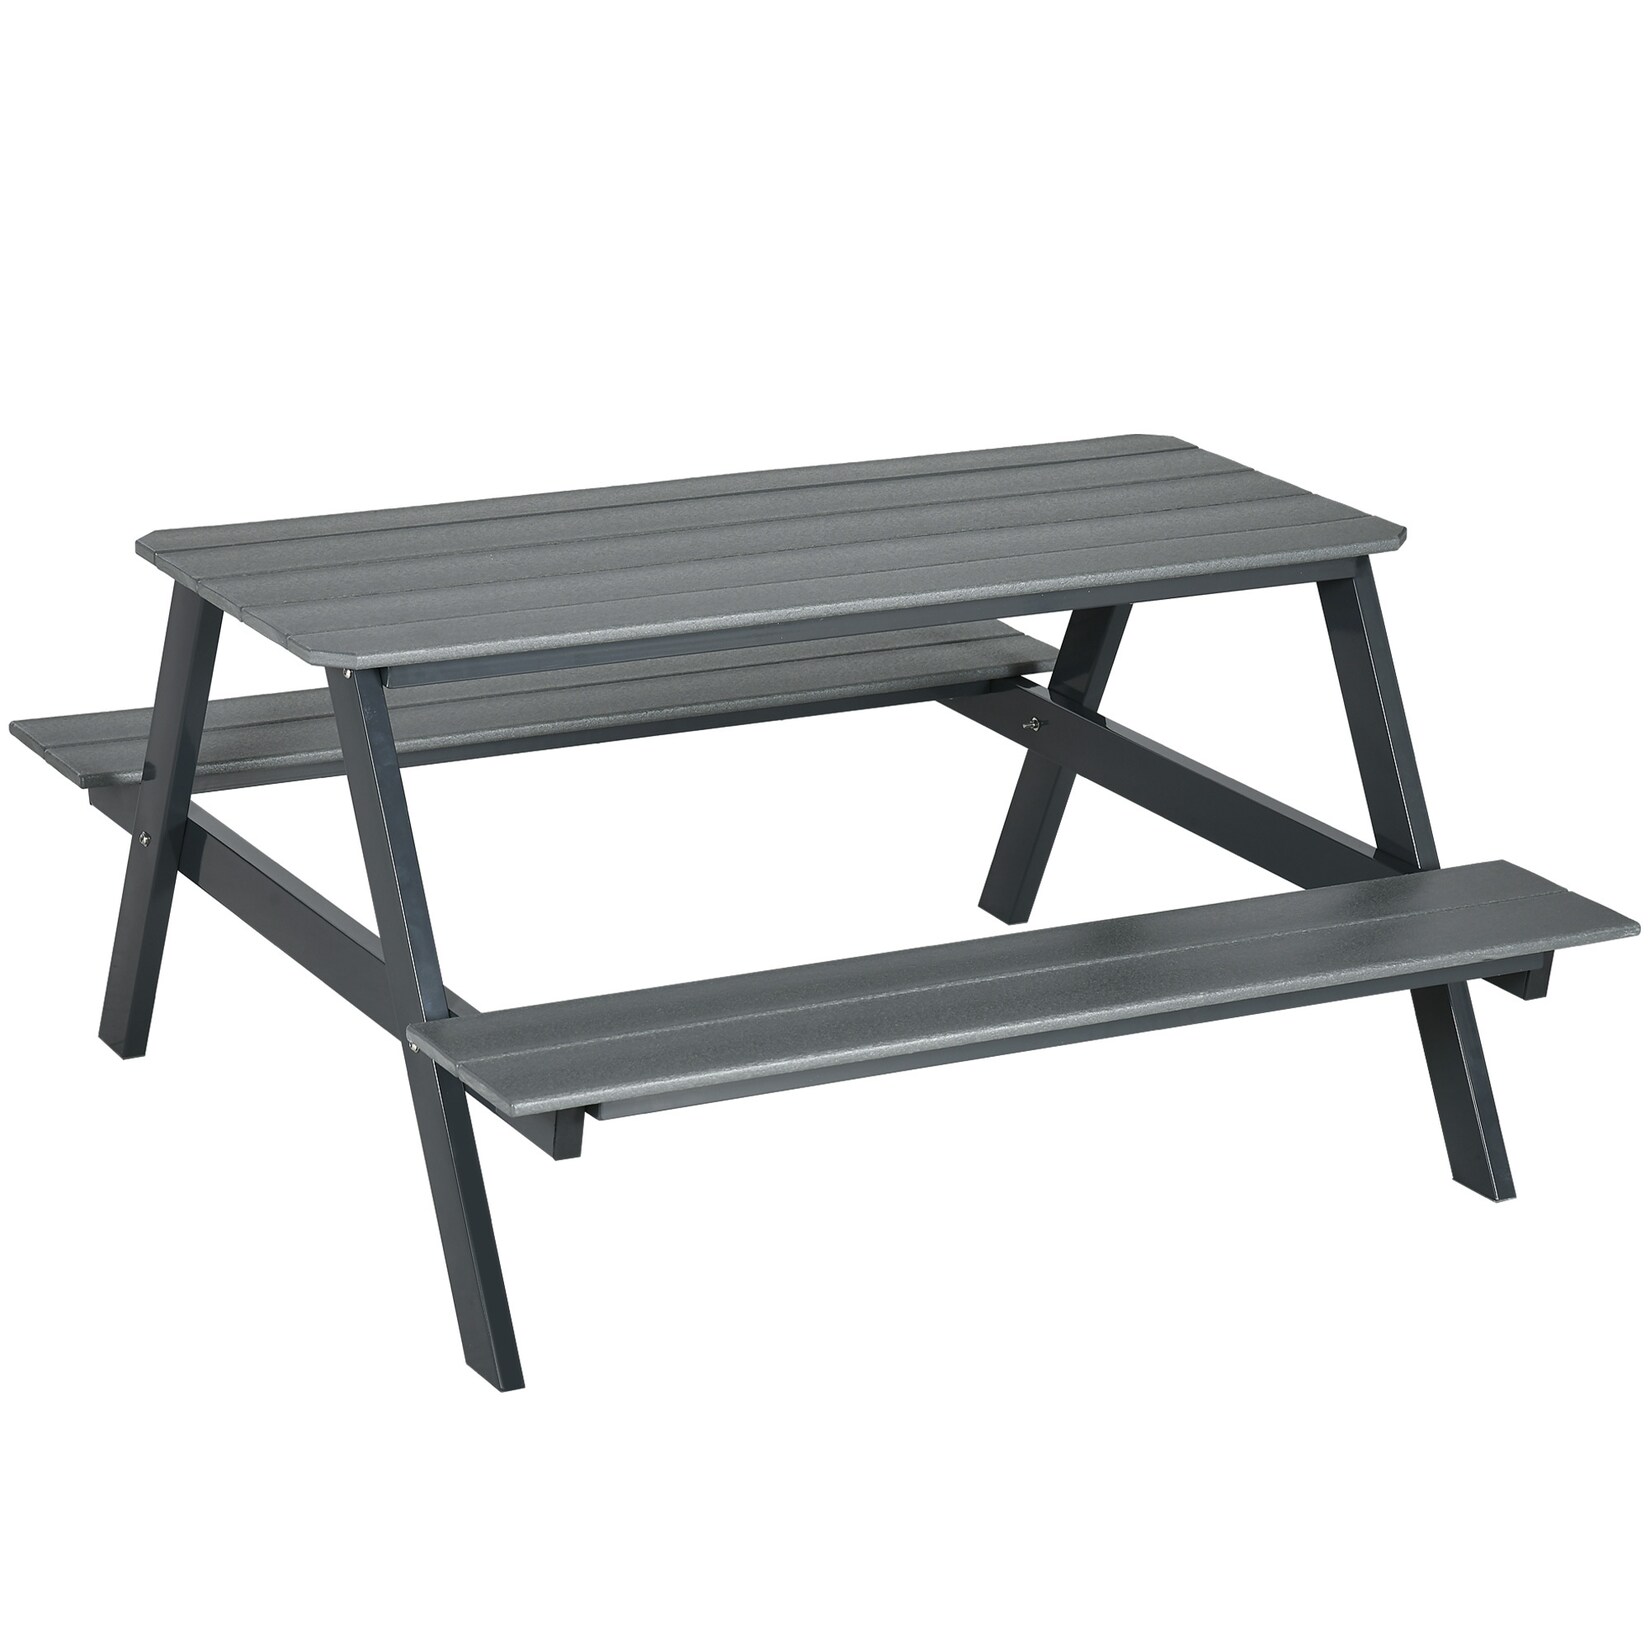 Outsunny Picknick Tisch mit Bank grau 150L x 140B x 47H cm